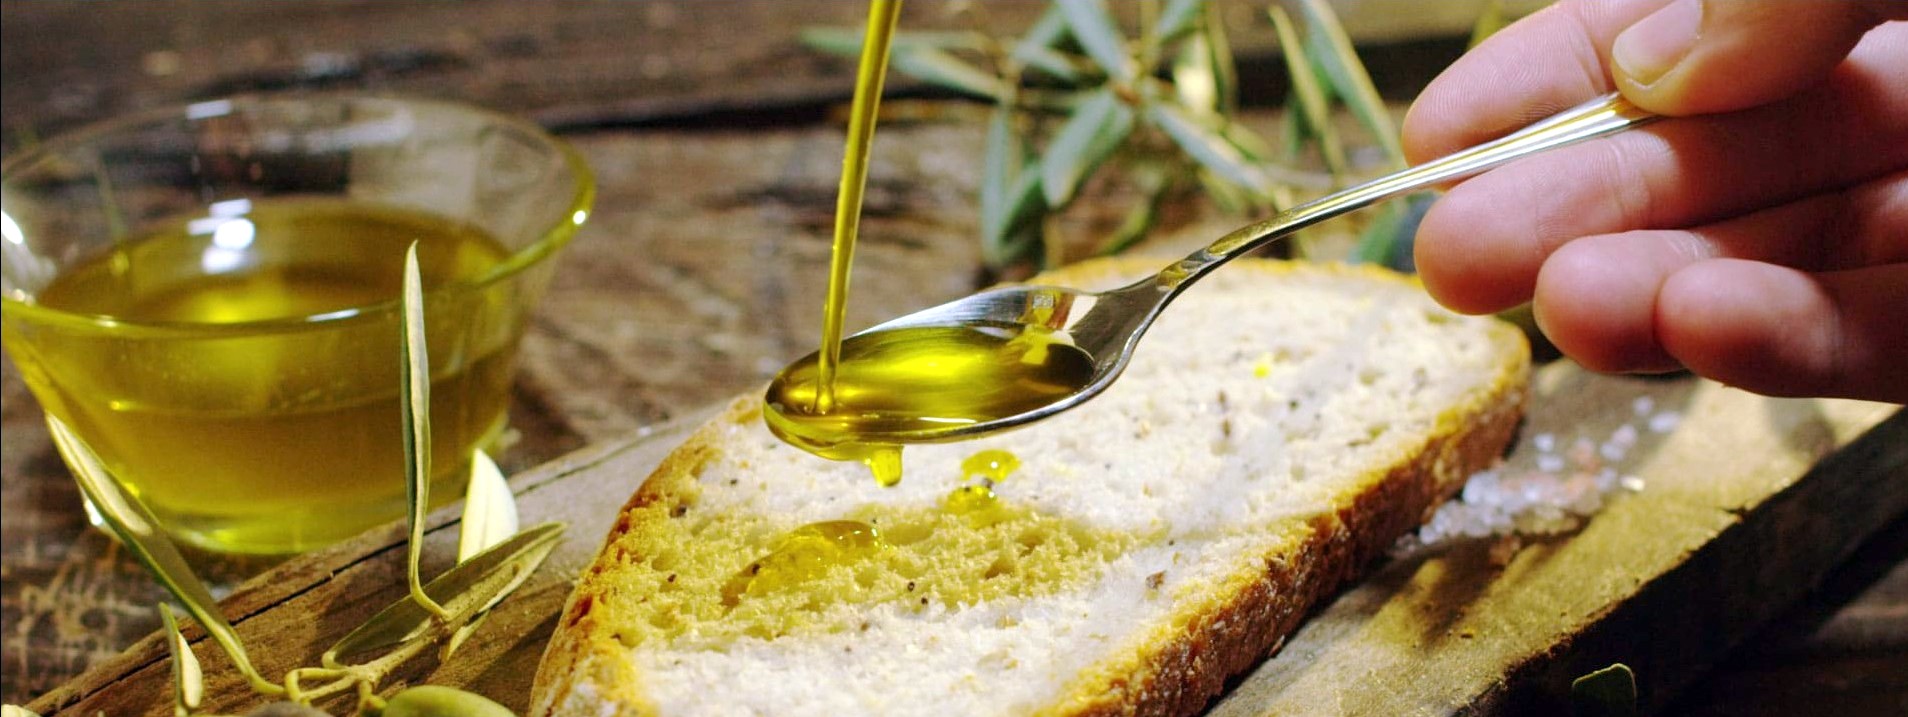 L'olio e l'agroindustria olivicola rappresentano uno dei comparti più tradizionali e tipici dell’economia agroindustriale veronese